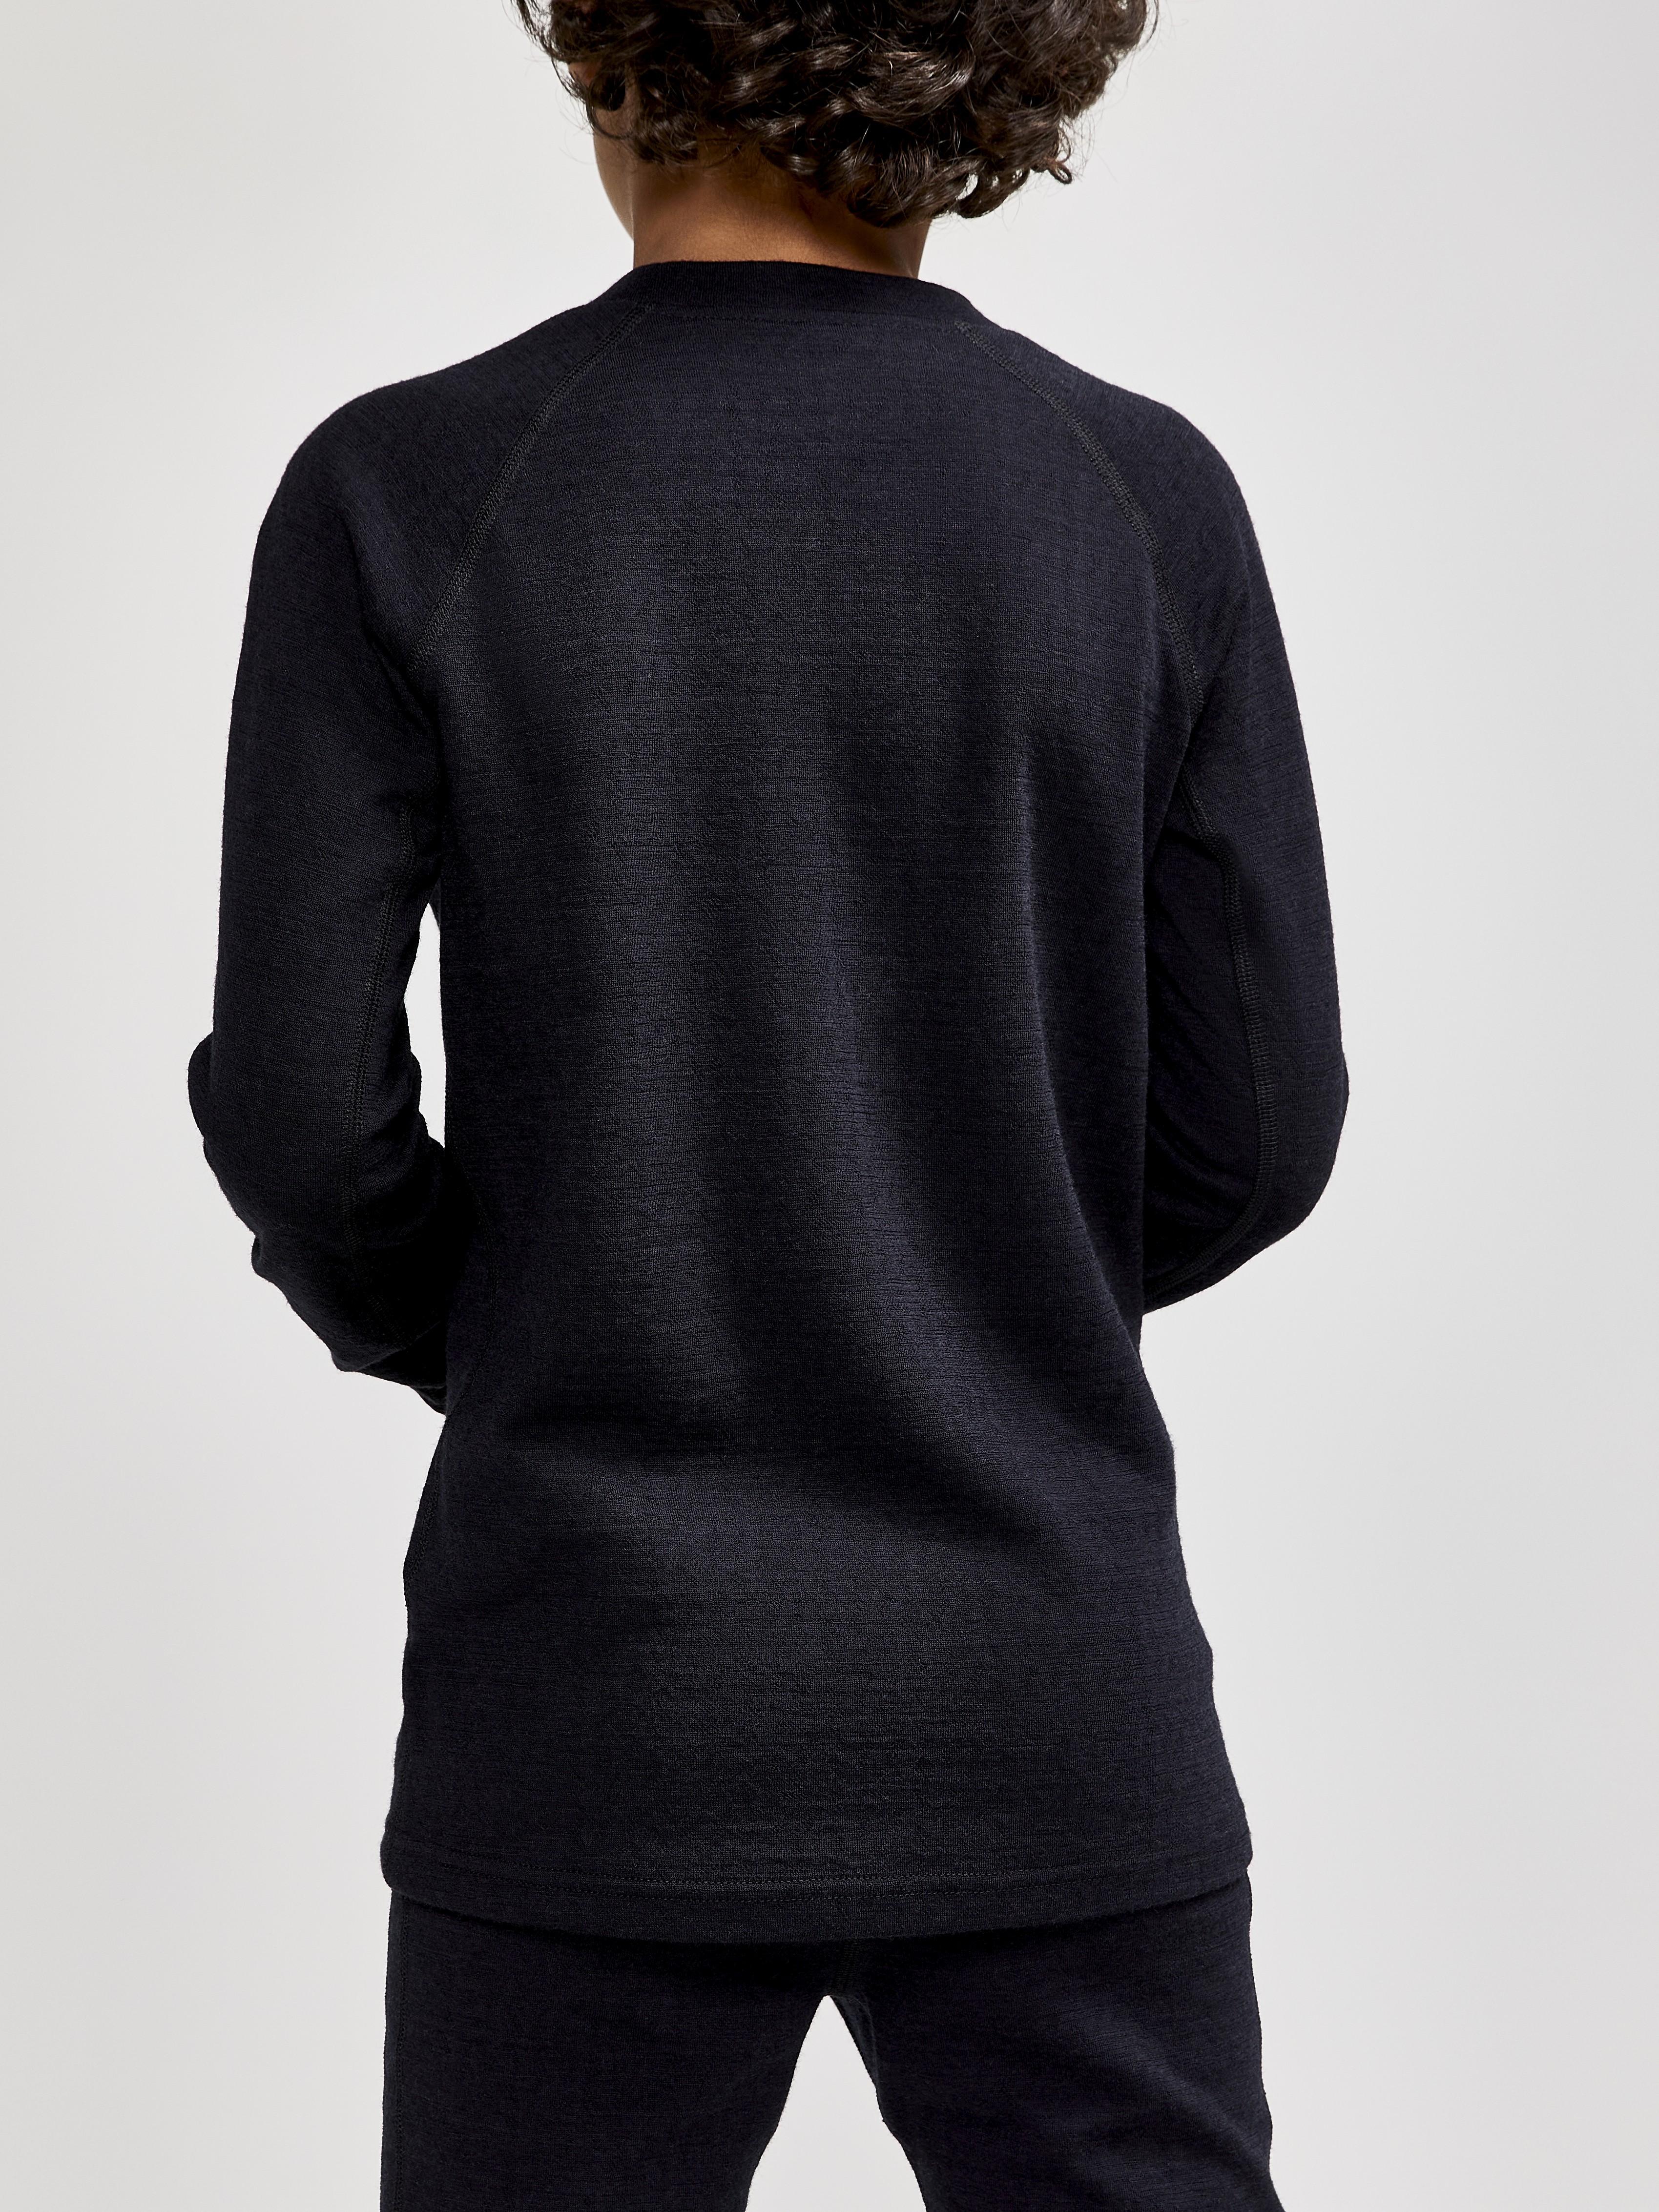 ADV Nordic Wool LS | Sportswear - JR Craft Black